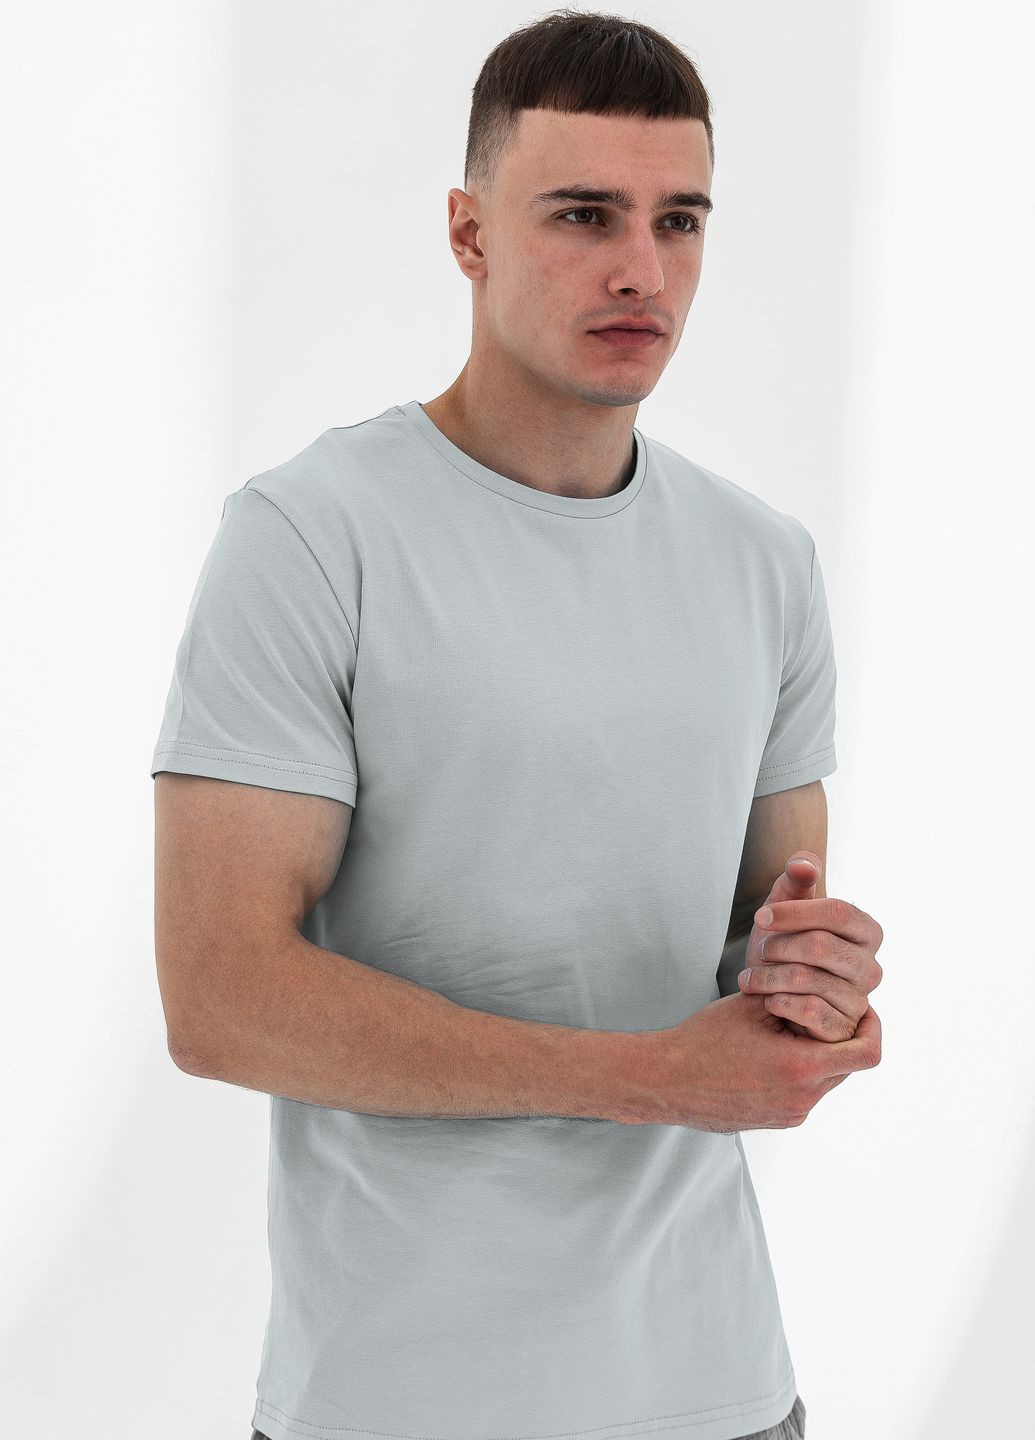 Сіра футболка чоловіча базова, сірий German Volf